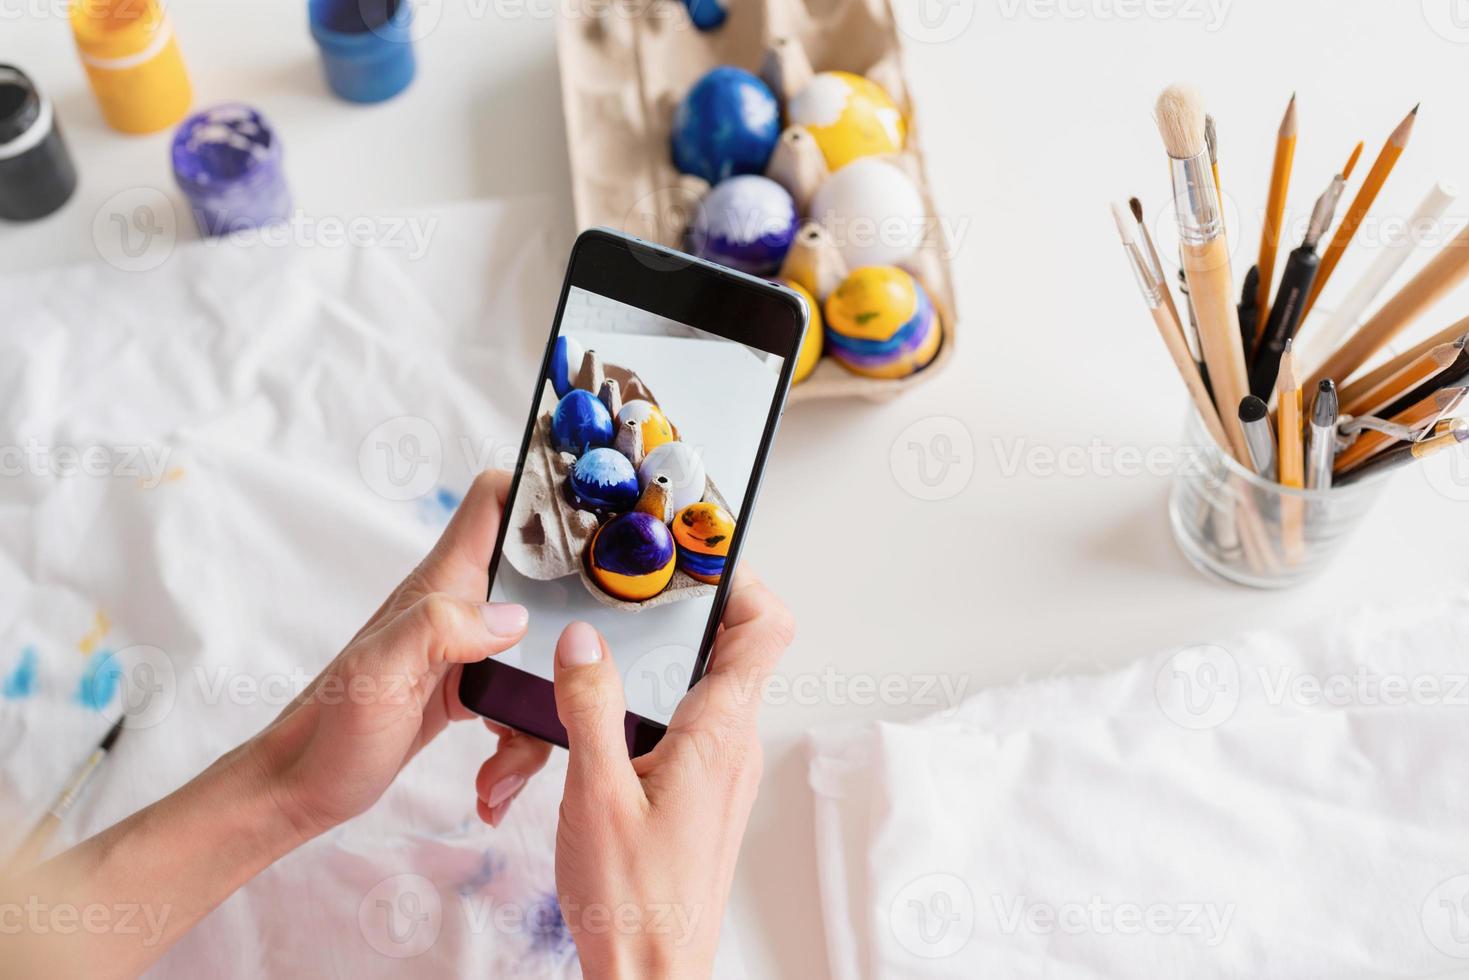 donna che colora le uova di pasqua in cucina, scattando foto sul cellulare